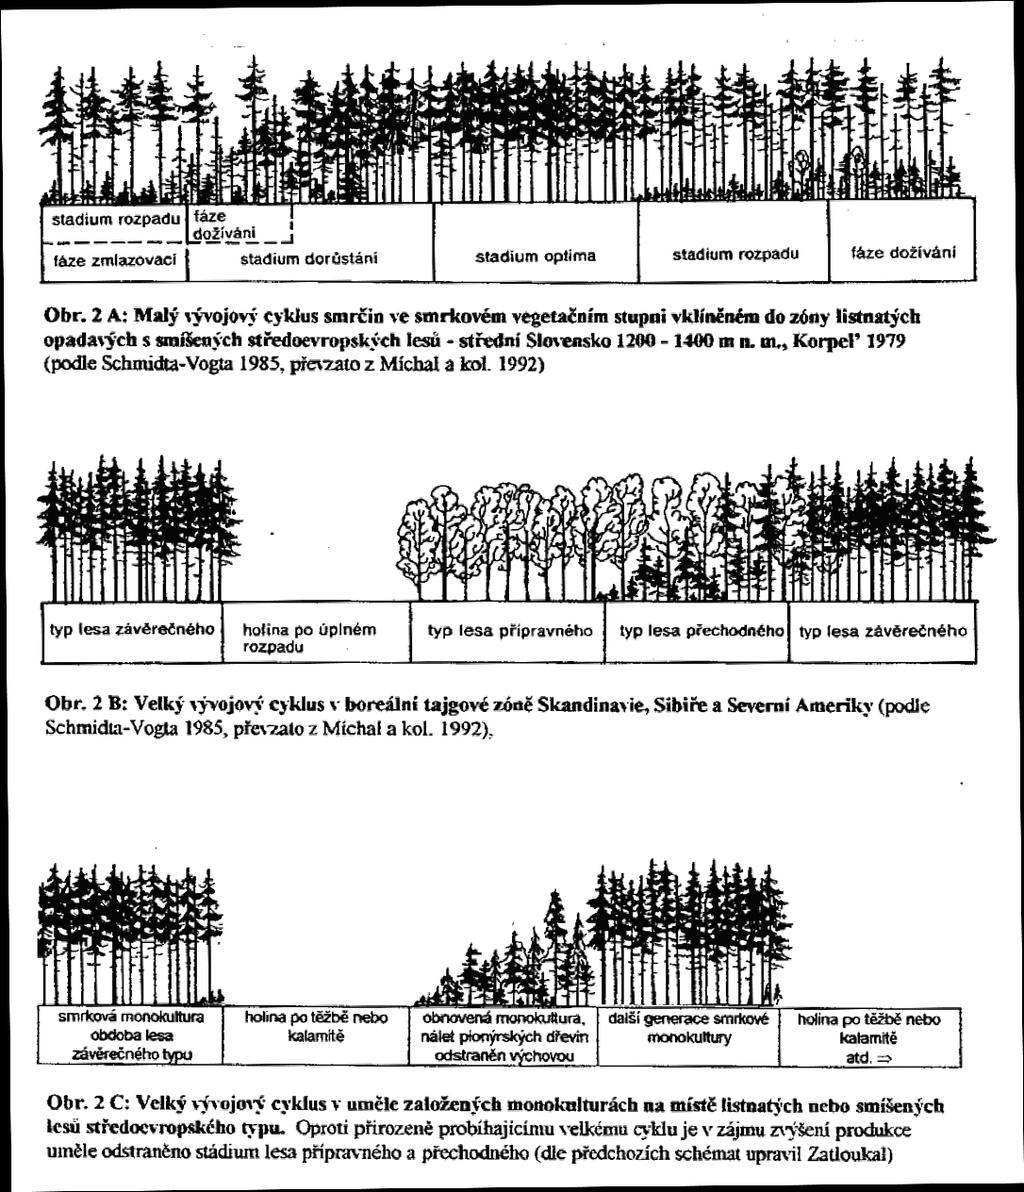 hospodářské úpravy lesů. Model lesa věkových tříd je vhodným nástrojem pro zařízení stejnorodých, stejnověkých a převážně holosečně obhospodařovaných jehličnatých lesů.